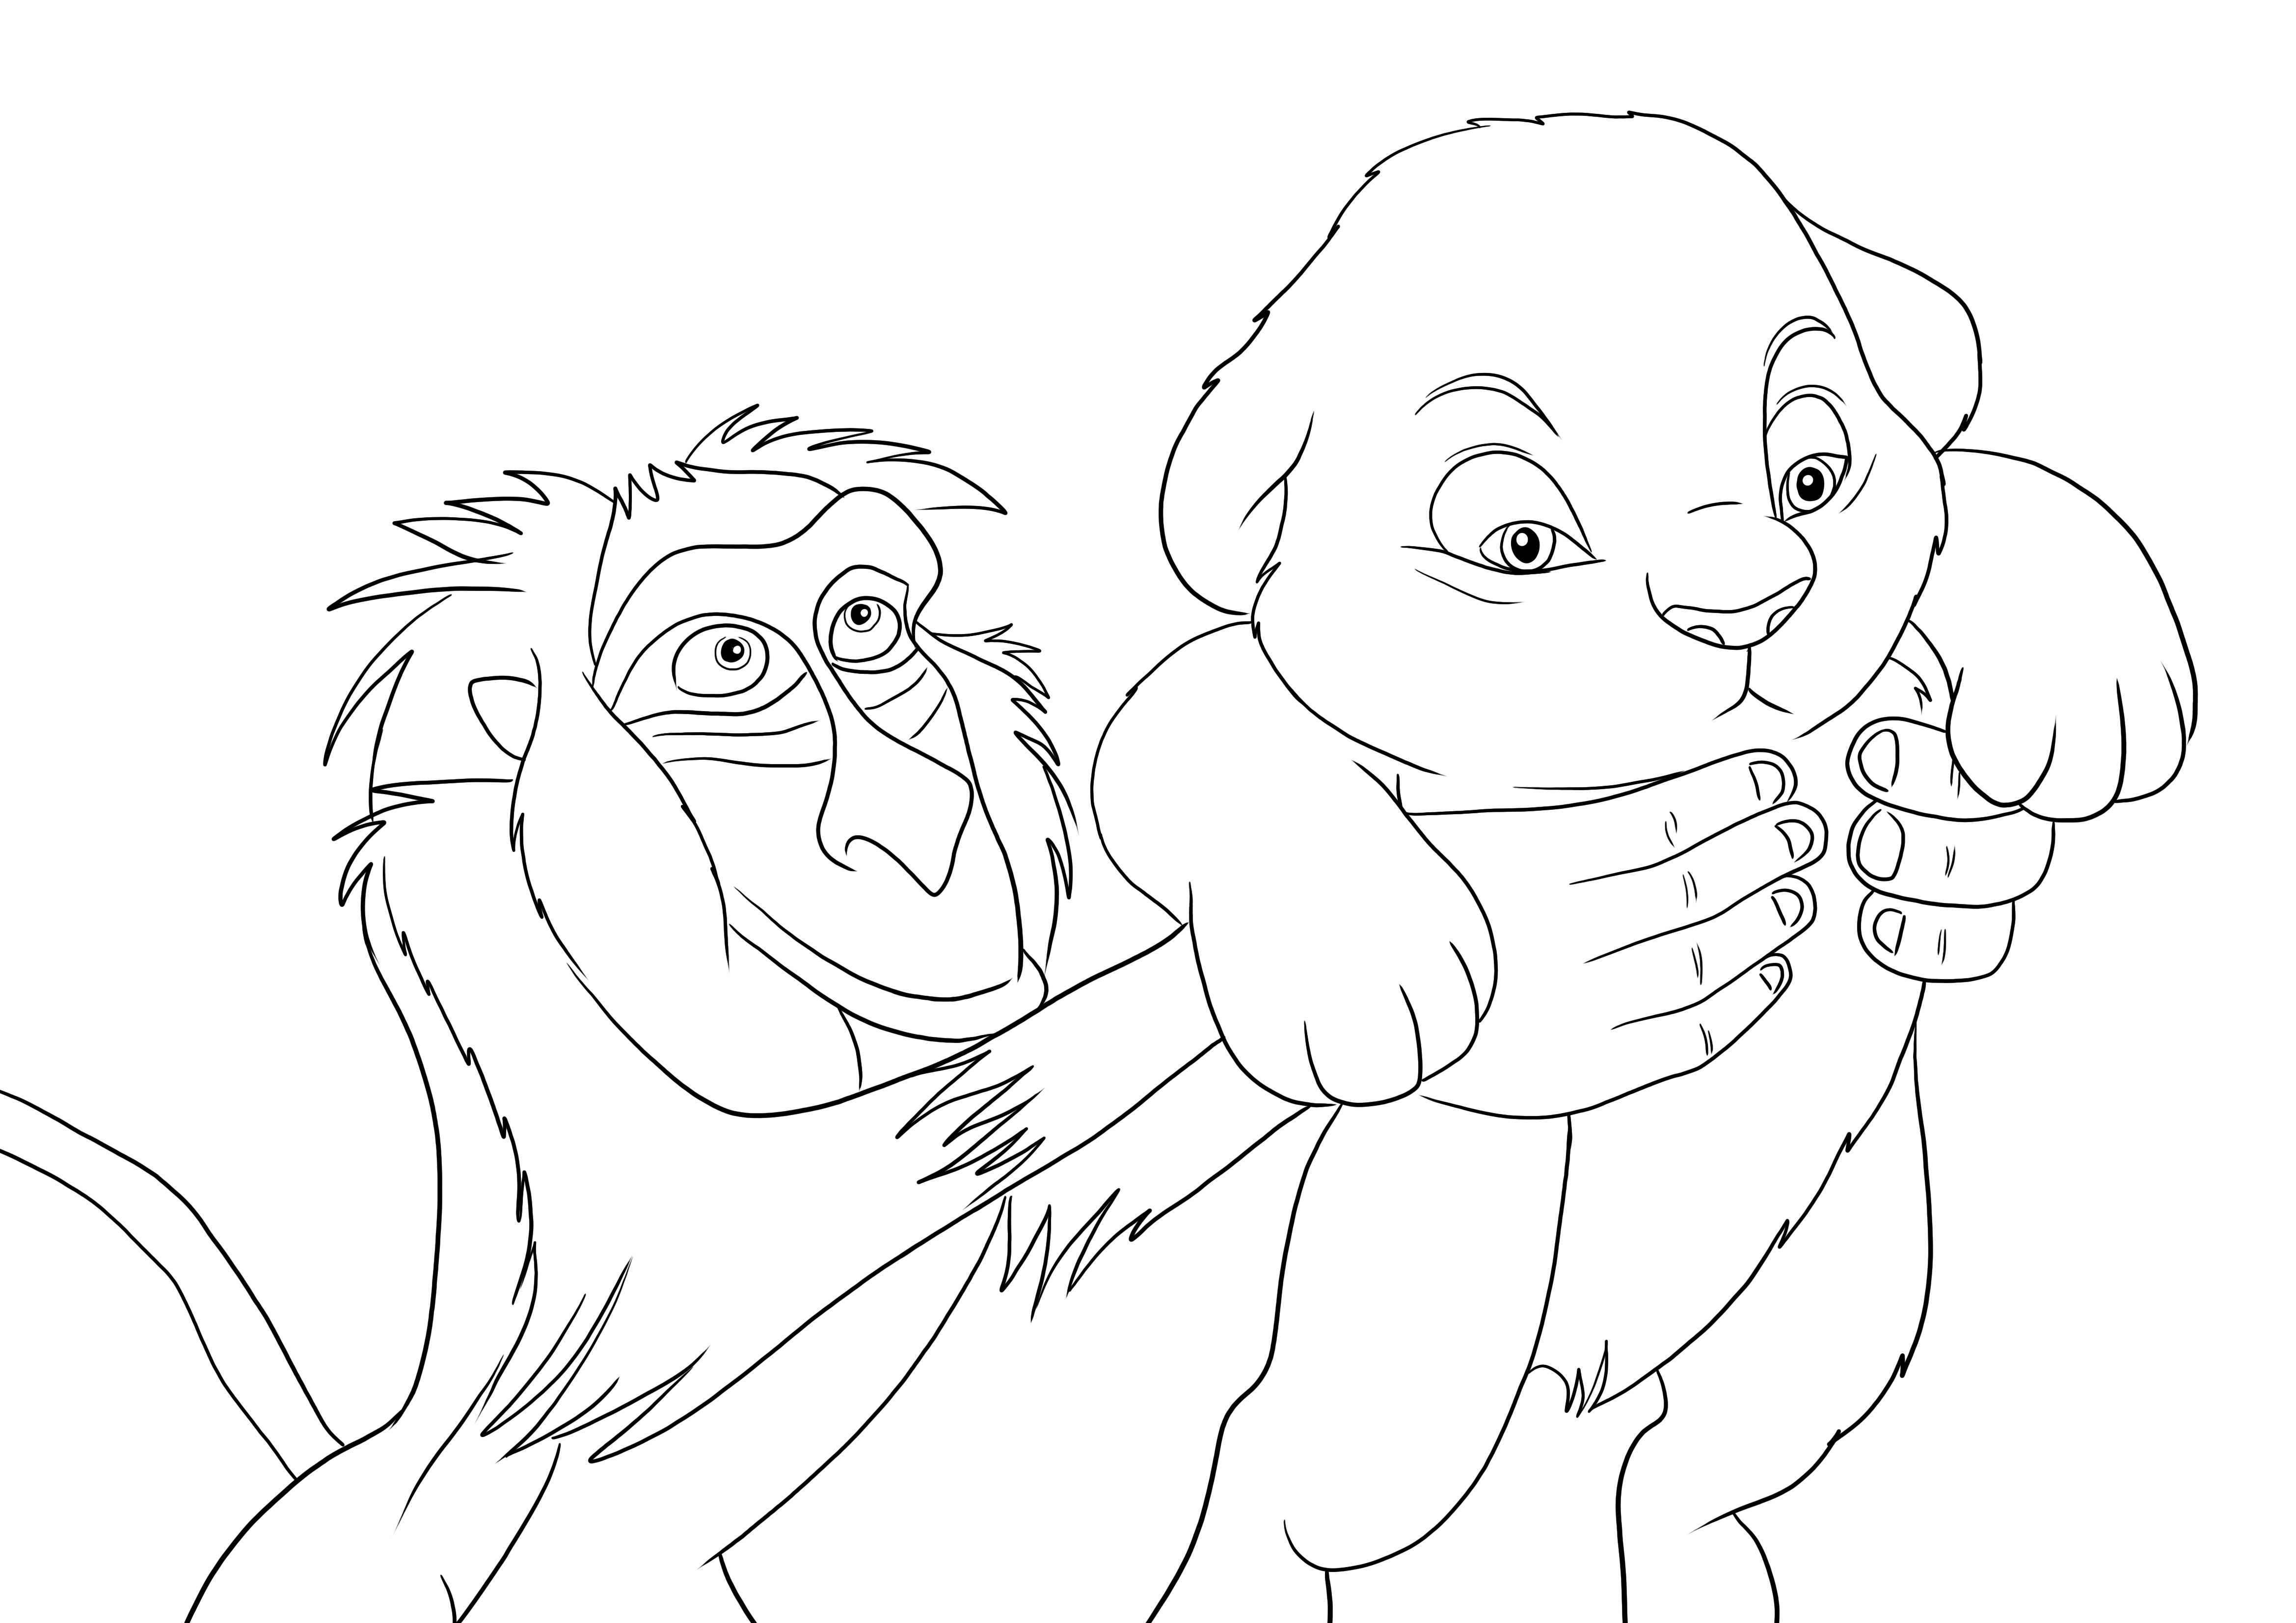 Rafiki segurando o bebê Simba livre para colorir e imprimir para todos os fãs